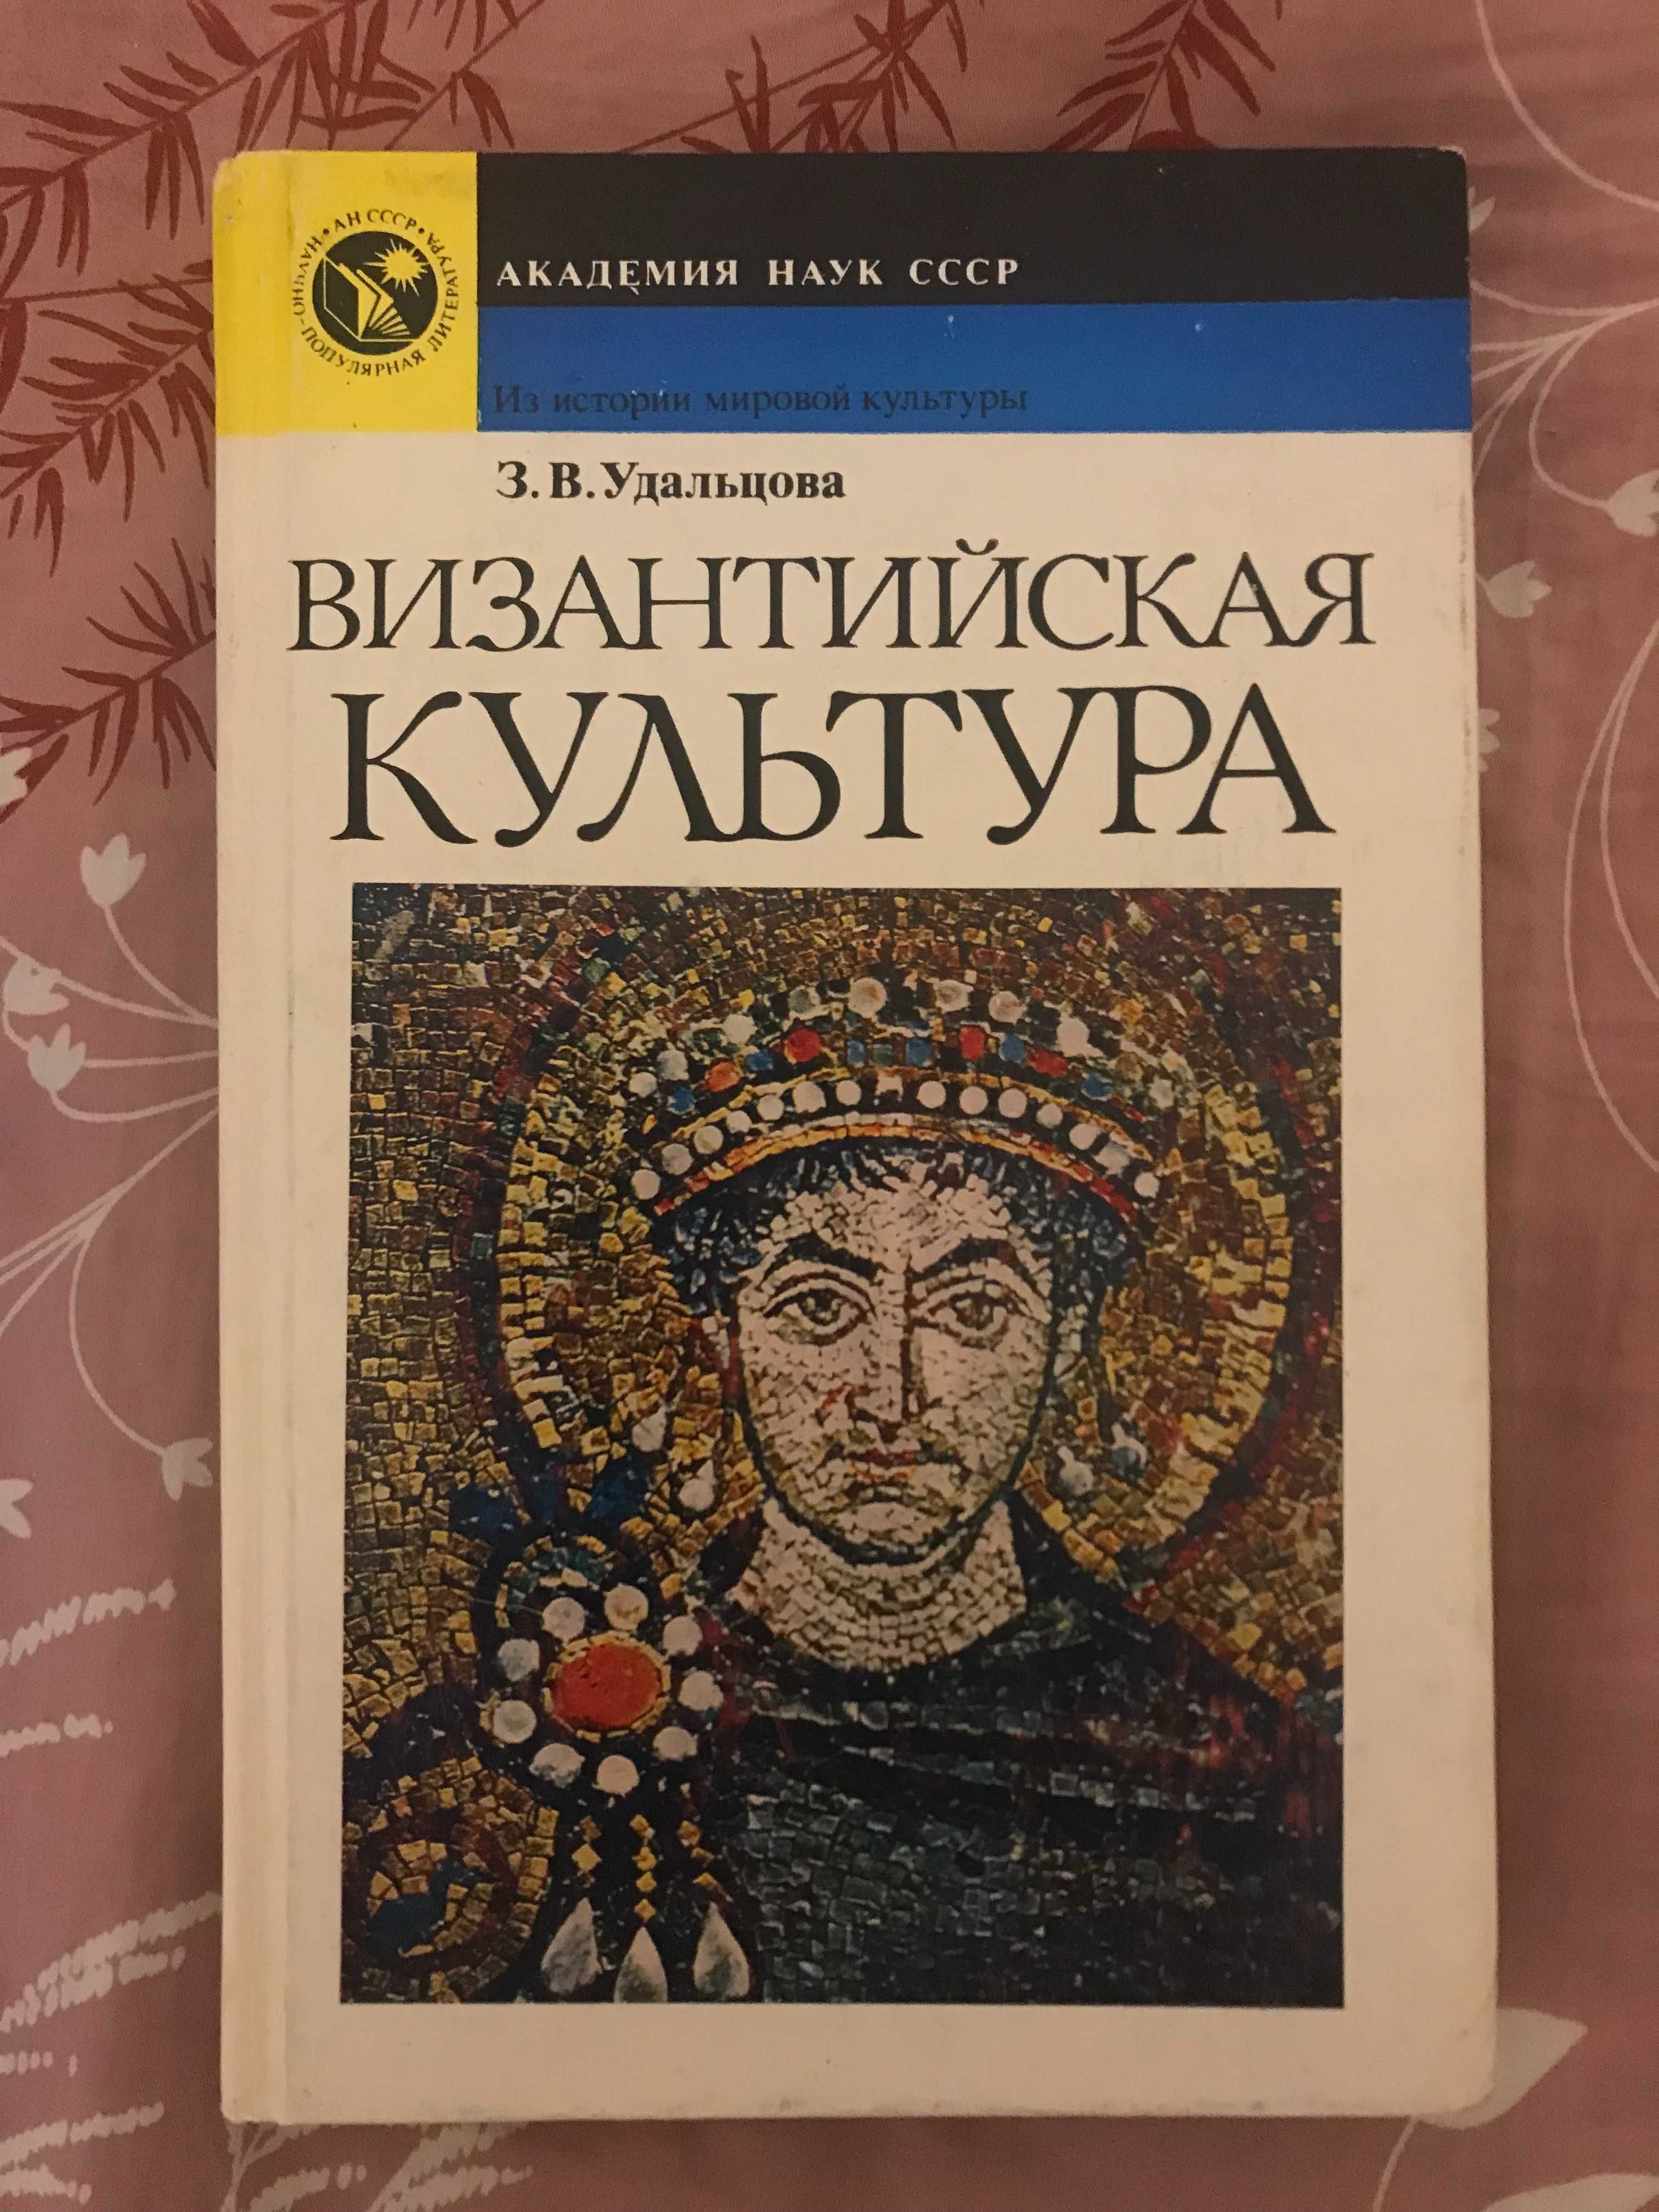 З. В. Удальцова. Византийская культура